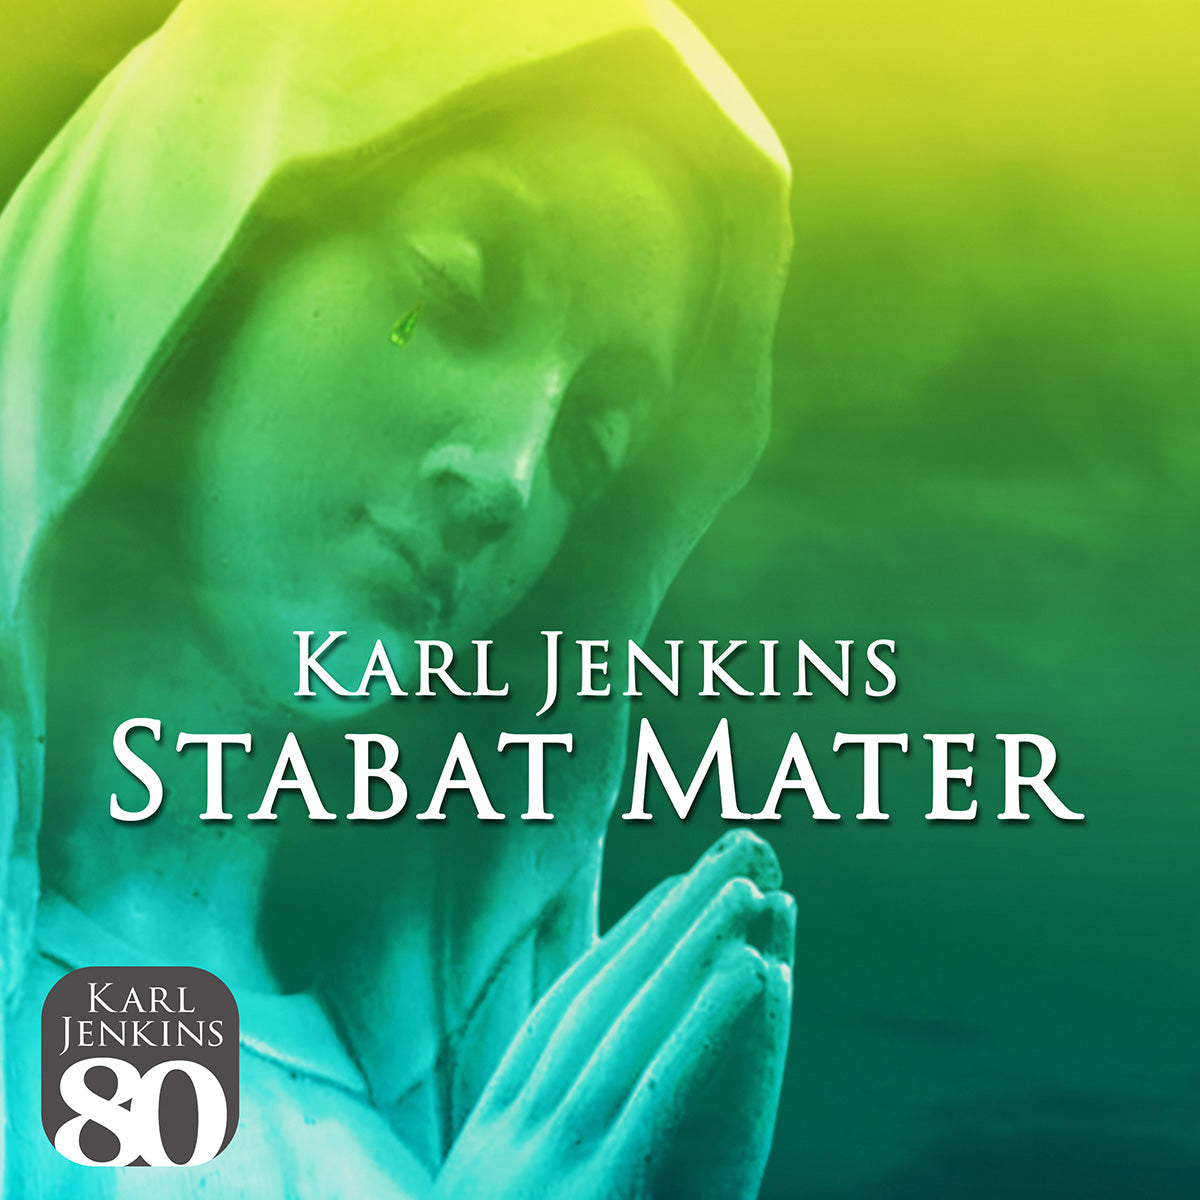 Karl Jenkins - Stabat Mater: CD